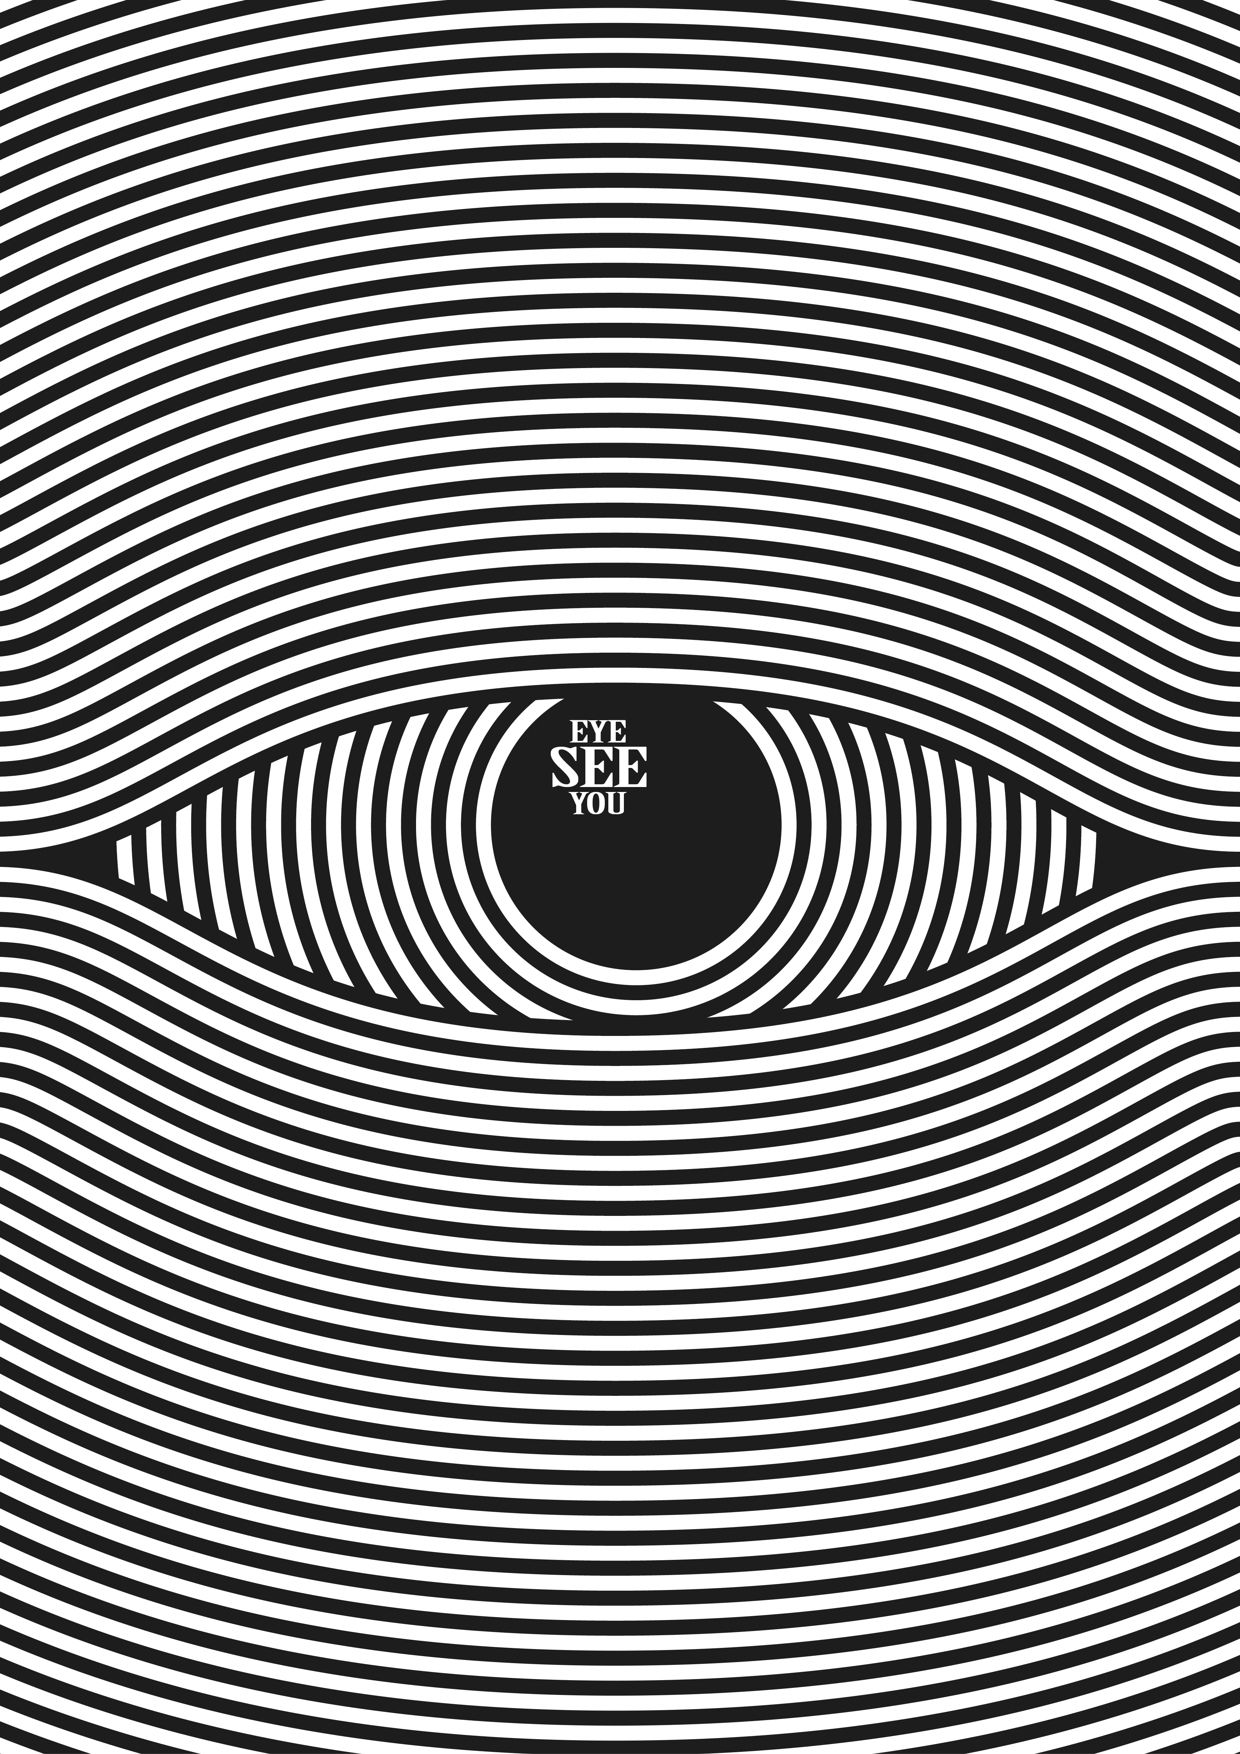 Eye See You” by Franck Nederstigt | design | Pinterest | Eye ...